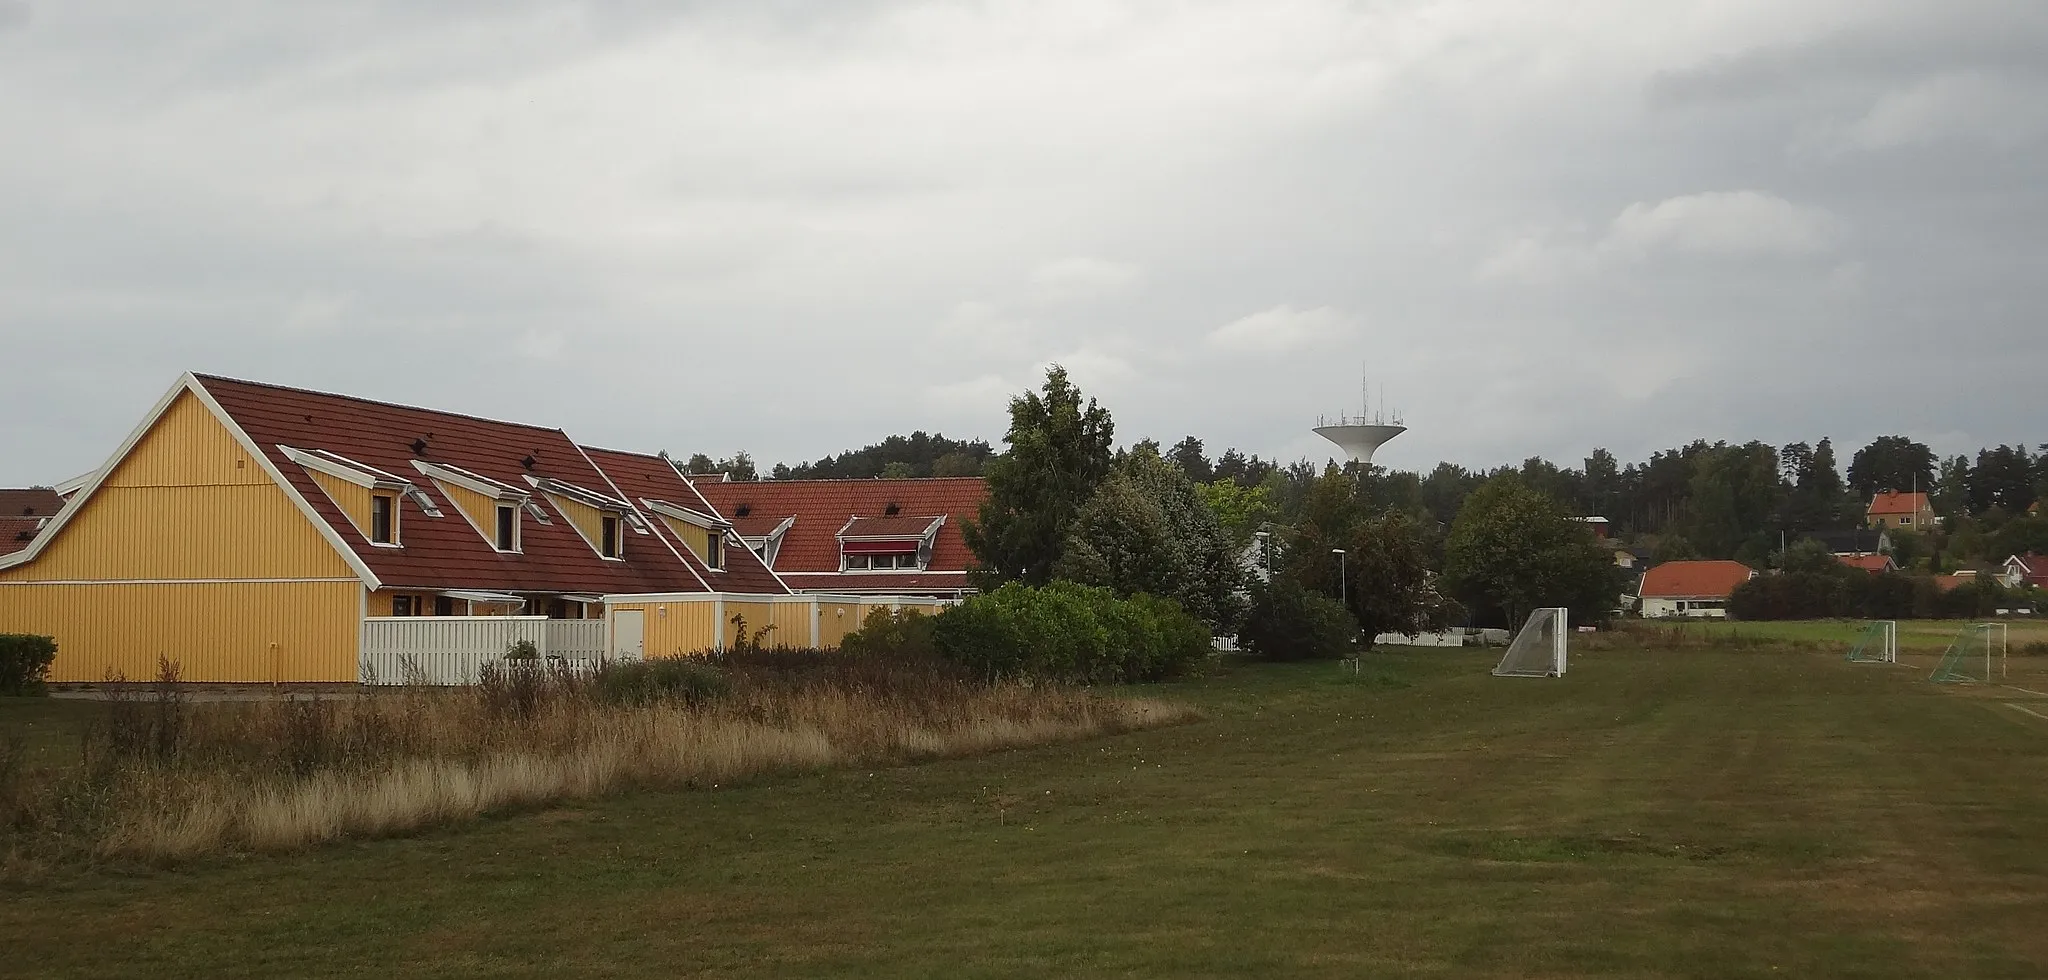 Photo showing: Hus på Blåklocksvägen i Hällbybrunn i Eskilstuna. I bakgrunden syns Hällbybrunns vattentorn.